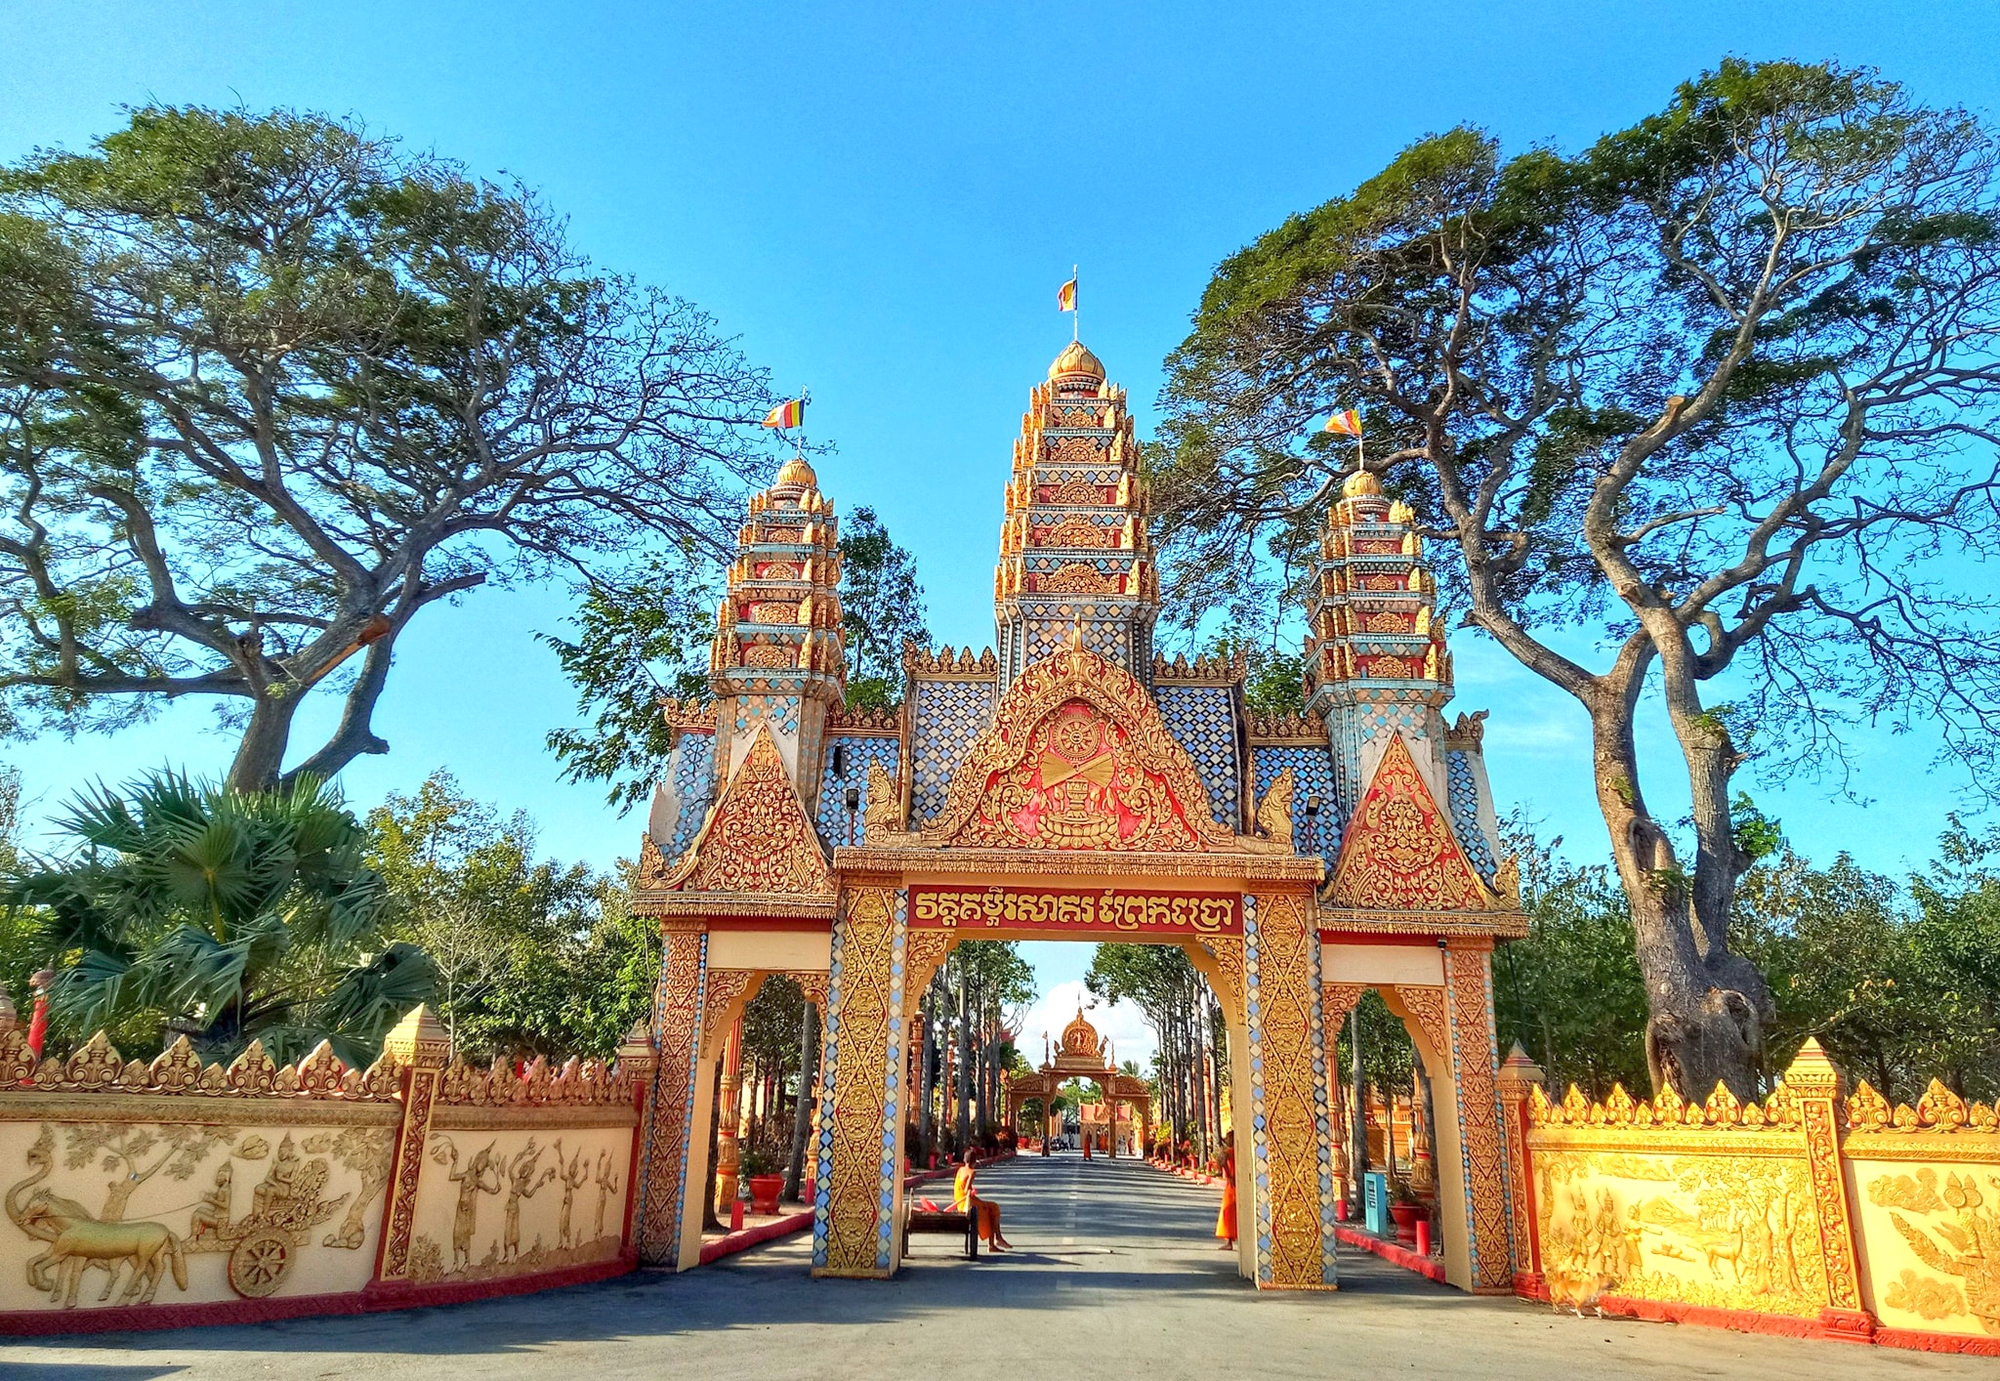 Phát hiện ngôi chùa trăm tuổi mang nét kiến trúc độc đáo ở miền Tây, du khách nhận xét mang vẻ đẹp “không thể quên” - Ảnh 3.